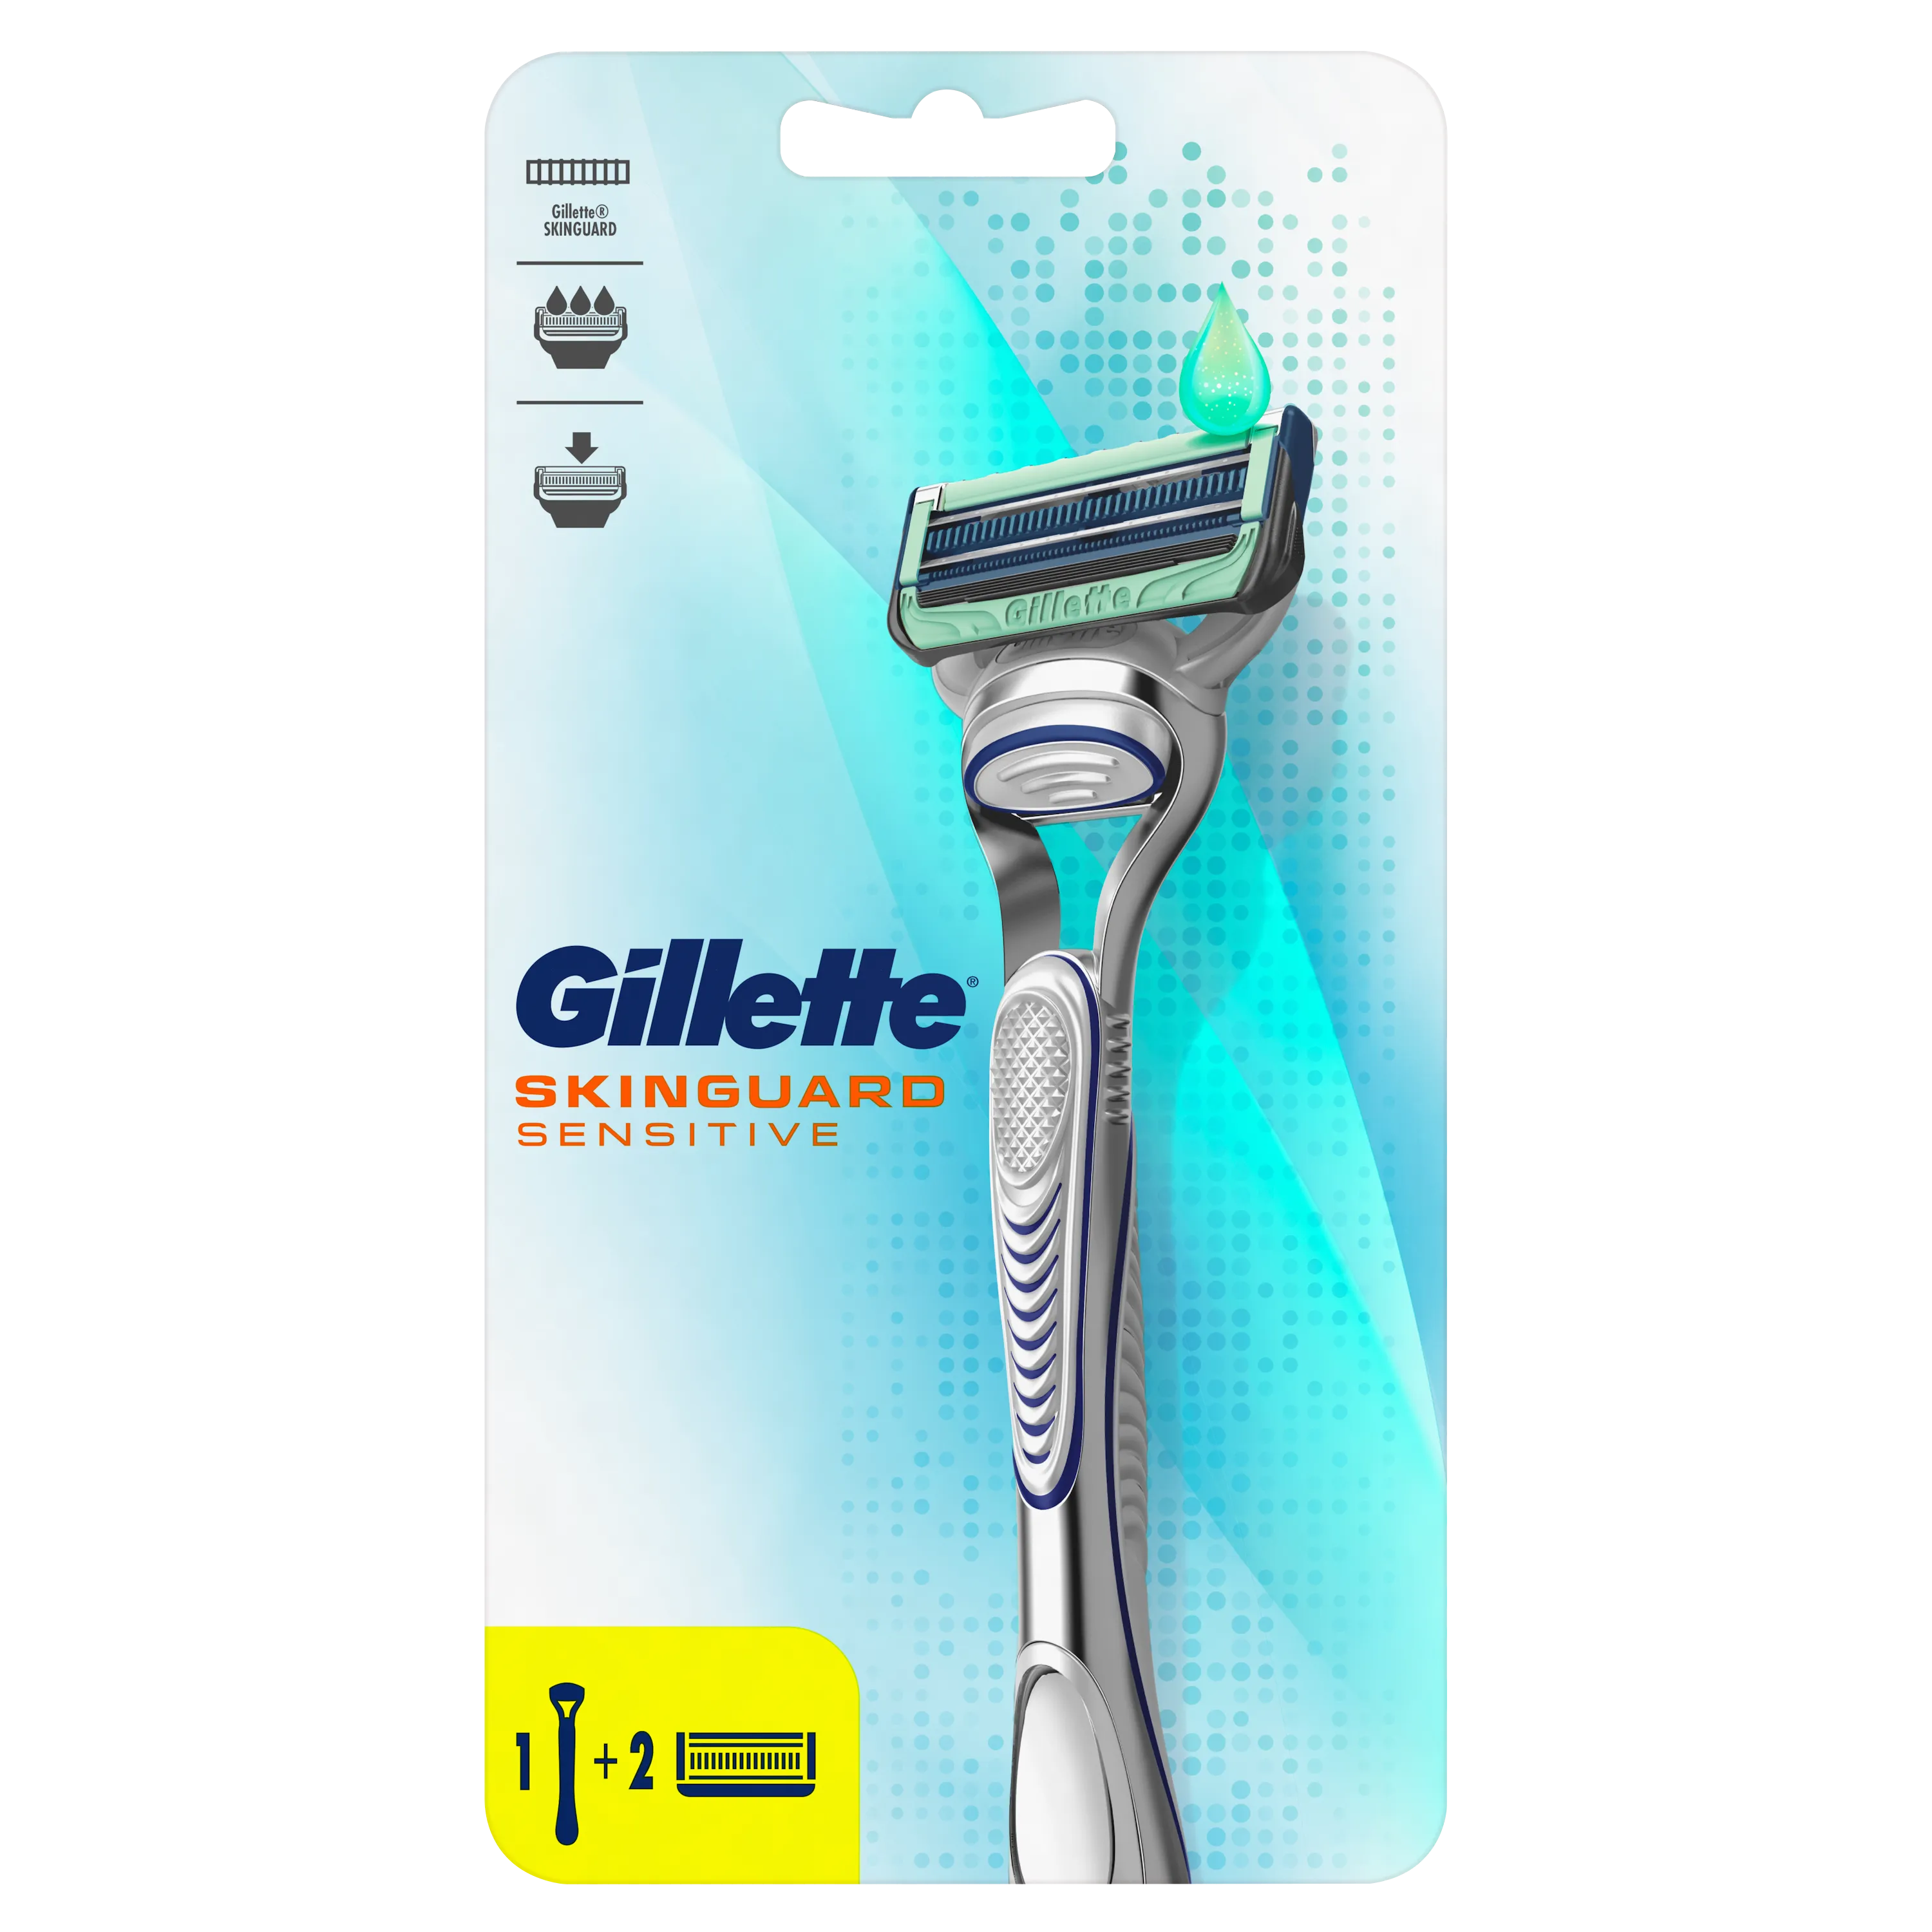 Gillette Skinguard Maszynka manualna do golenia dla mężczyzn, 1 szt. + wkłady 2 szt.